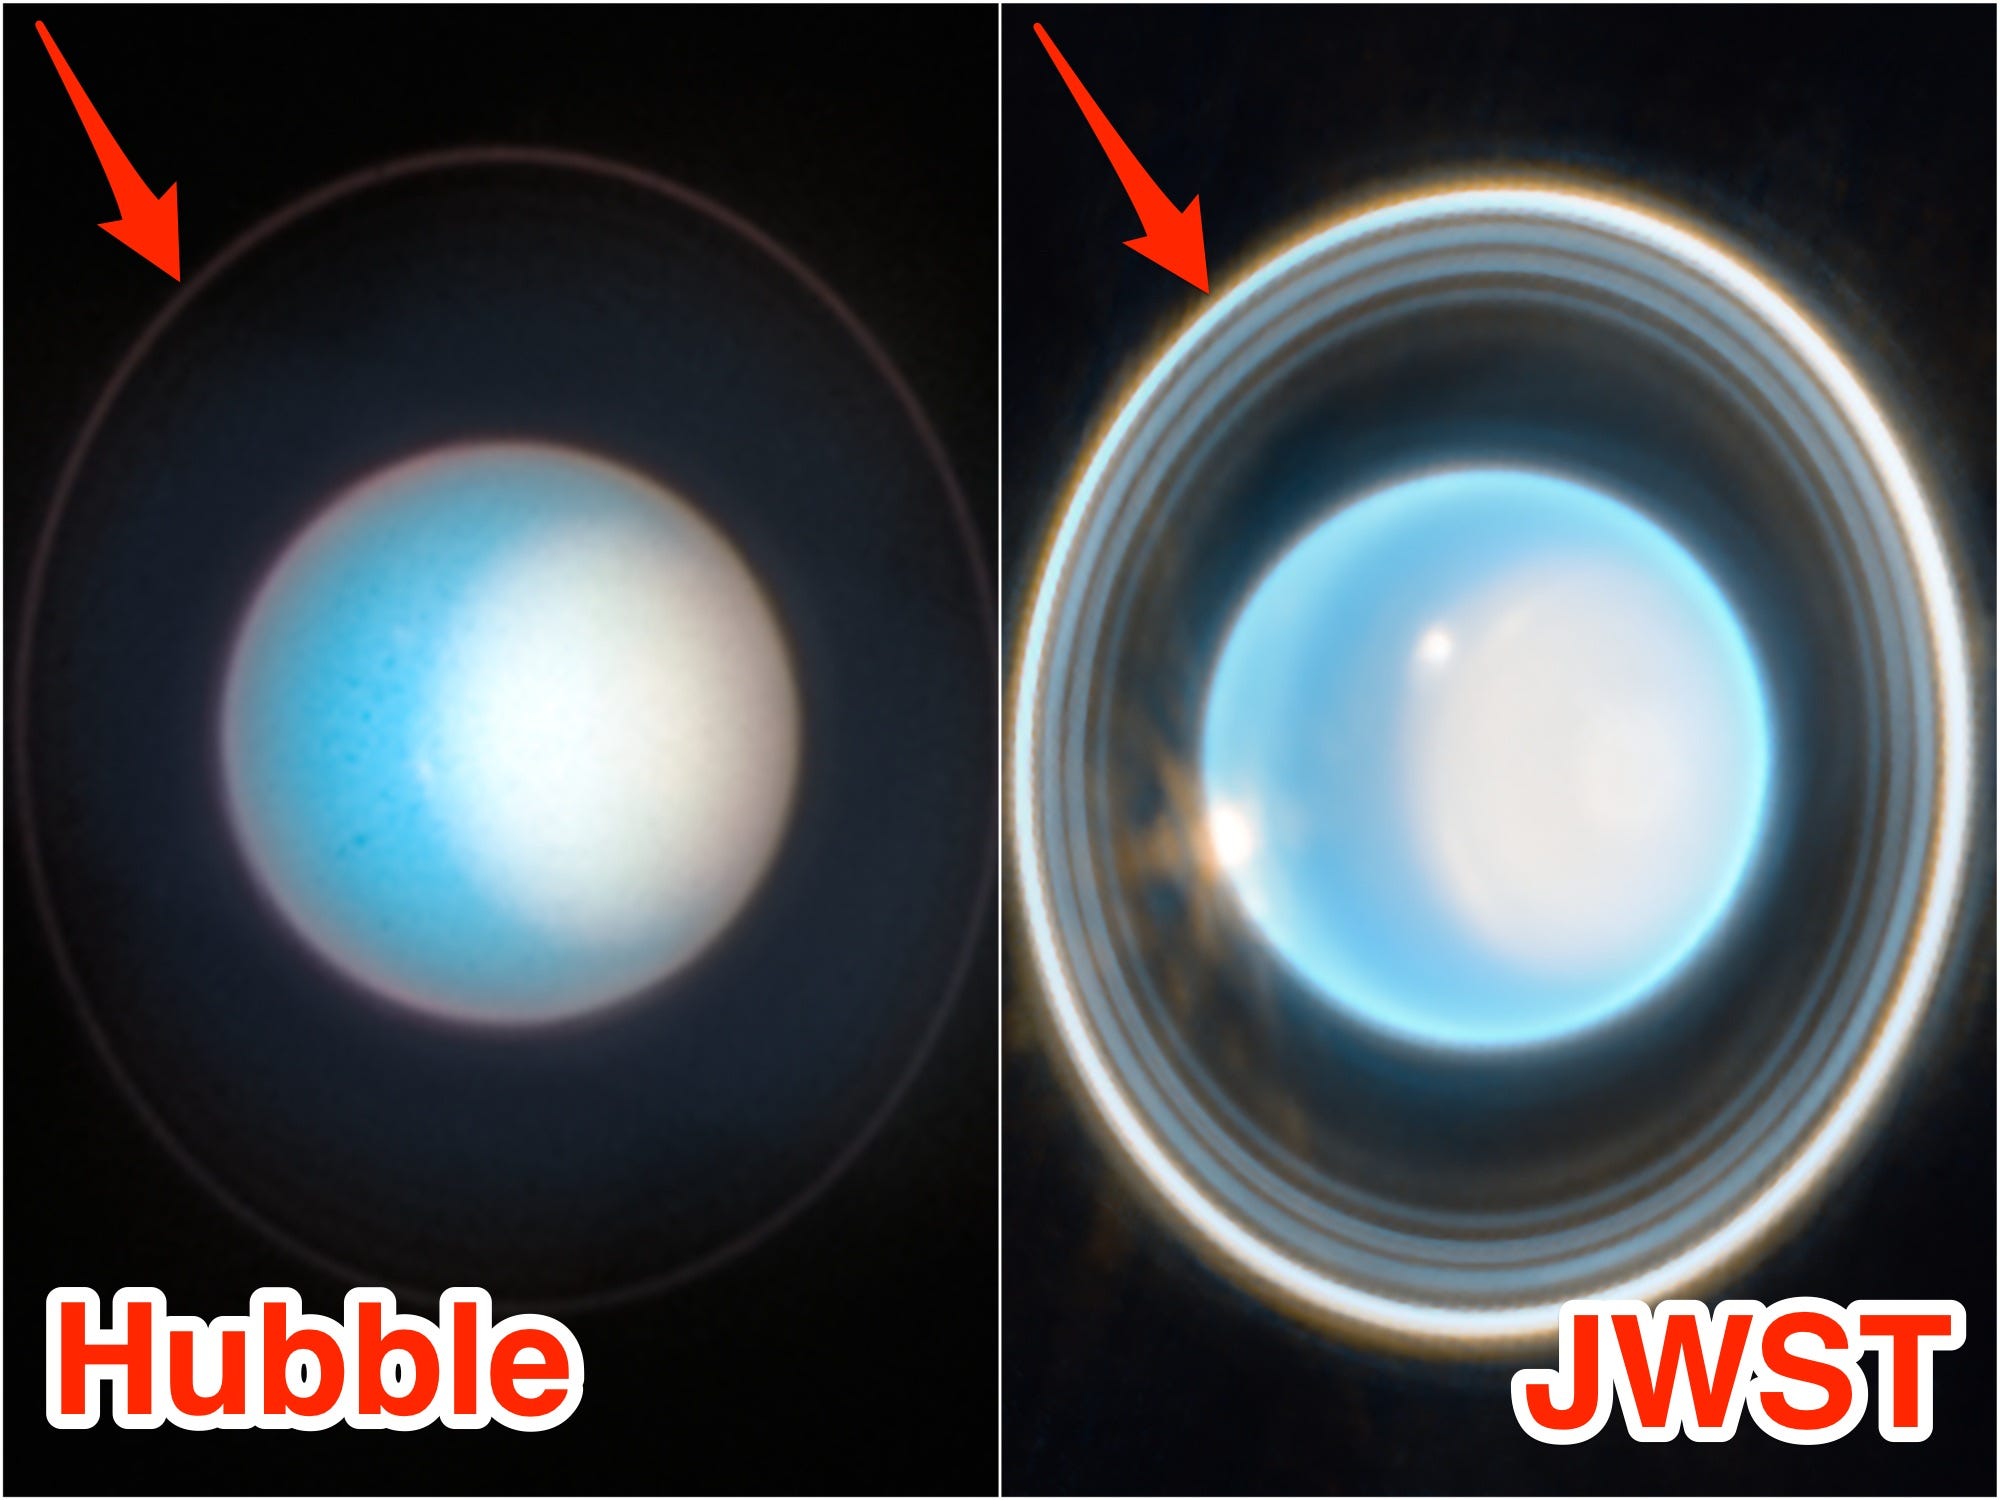 Ein direkter Vergleich aktueller Bilder von Uranus zeigt, dass die Ringe viel heller sind, wenn sie mit JWST aufgenommen wurden als mit Hubble.  Die Bilder sind mit Anmerkungen versehen und tragen die Aufschrift „Hubble“ und „JWST“.